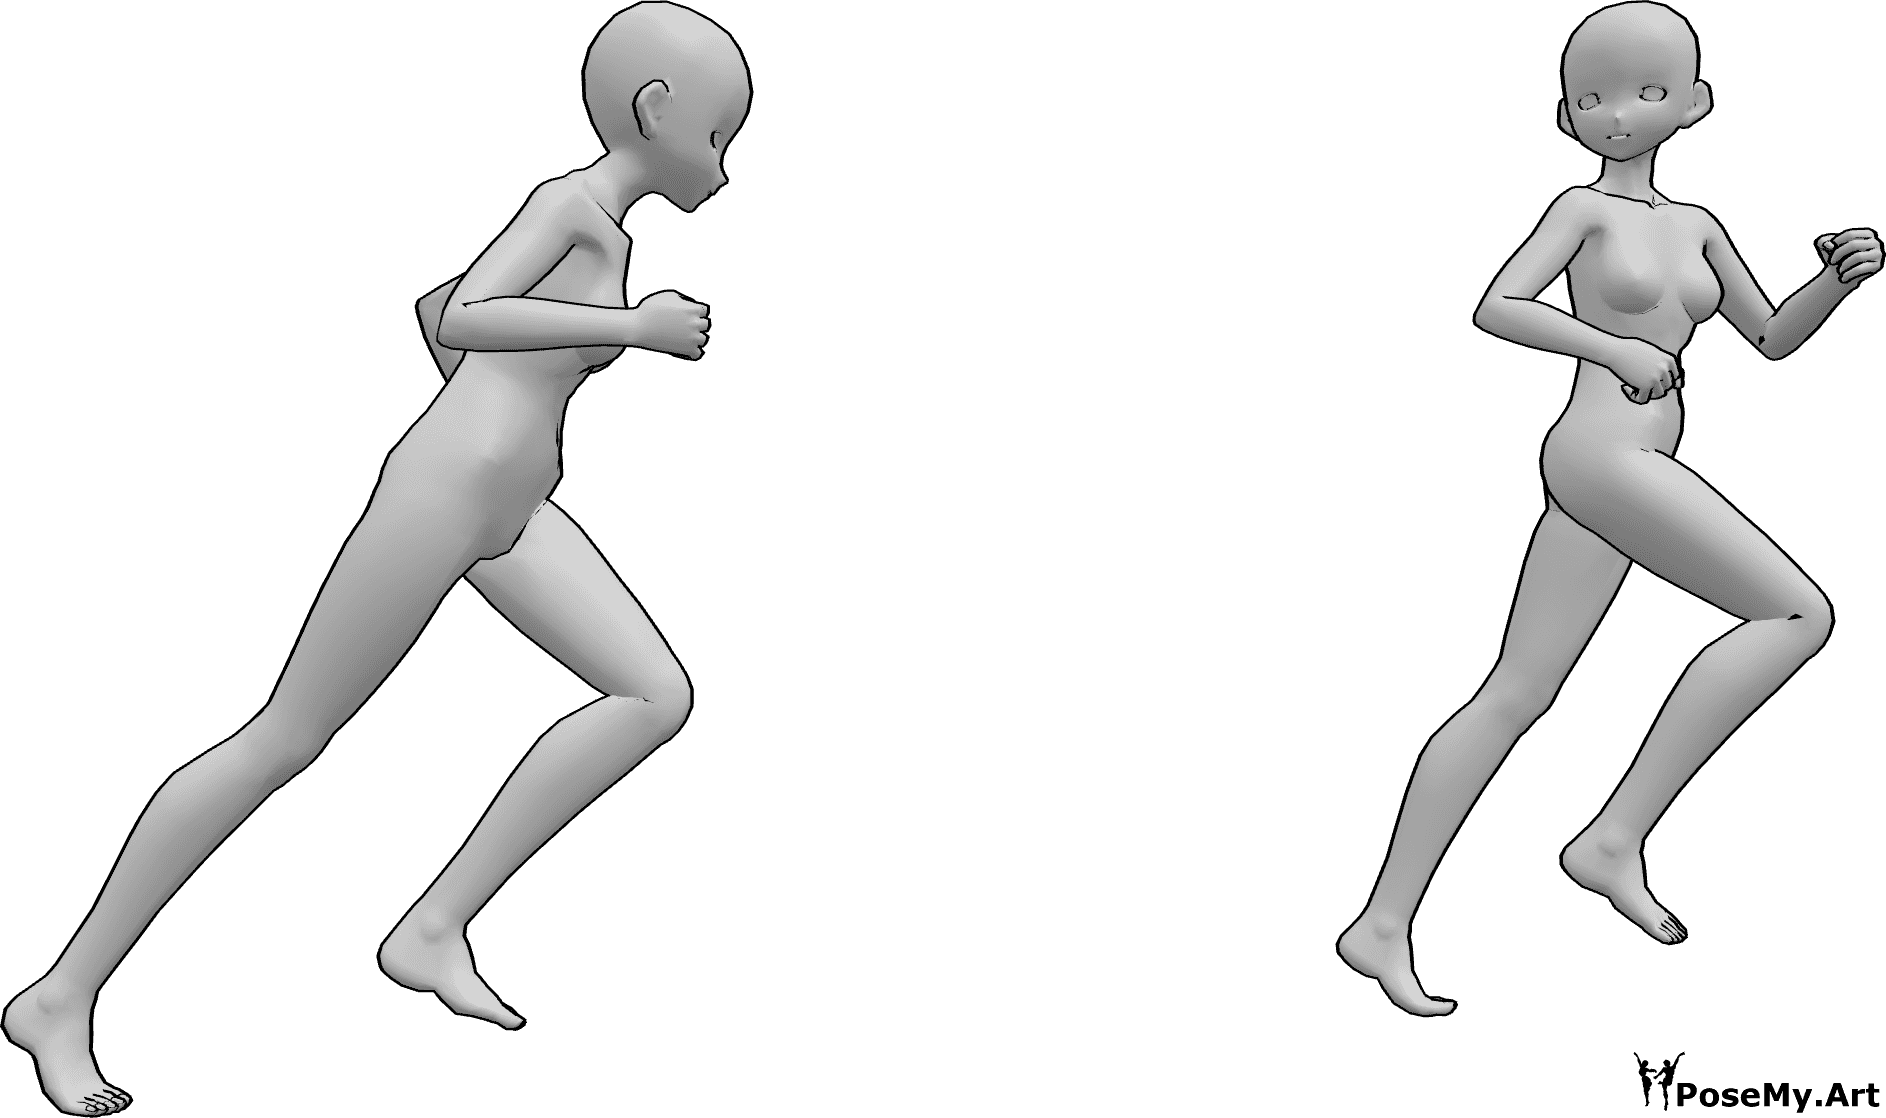 Referencia de poses- Anime corriendo persiguiendo pose - Dos mujeres anime corren, una persigue a la otra, que mira hacia atrás mientras huye